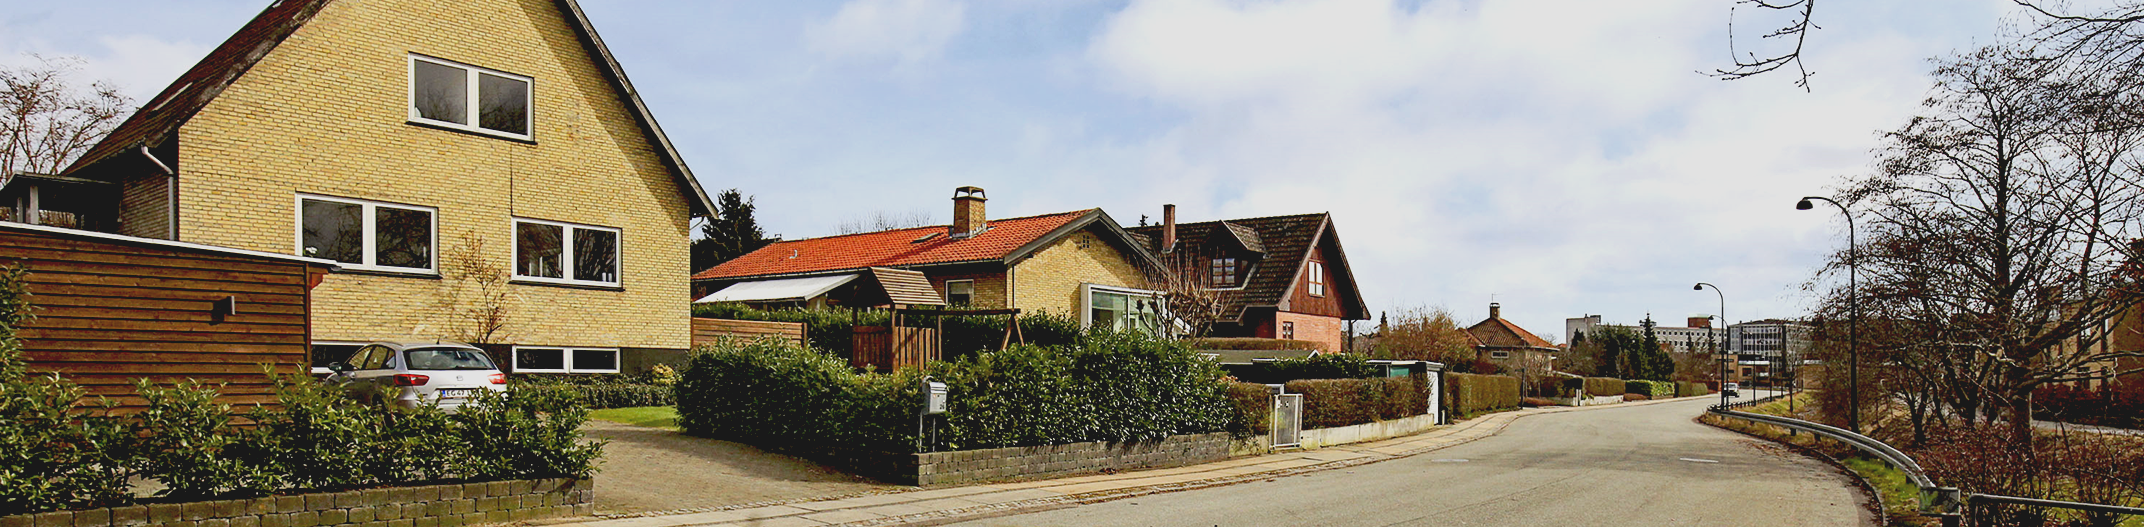 Houses in Denmark